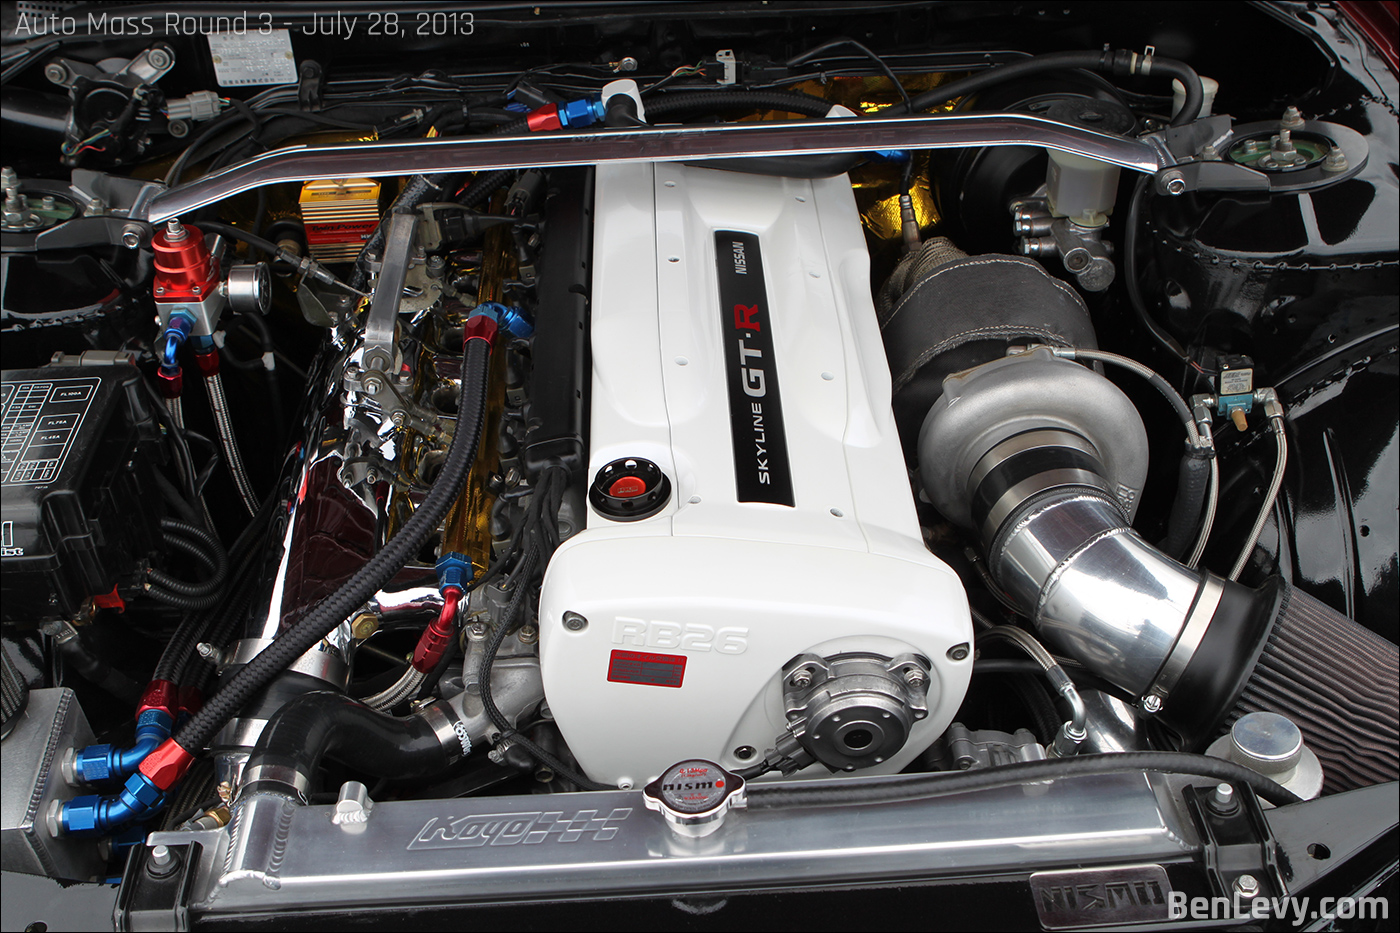 Single-turbo RB26 engine